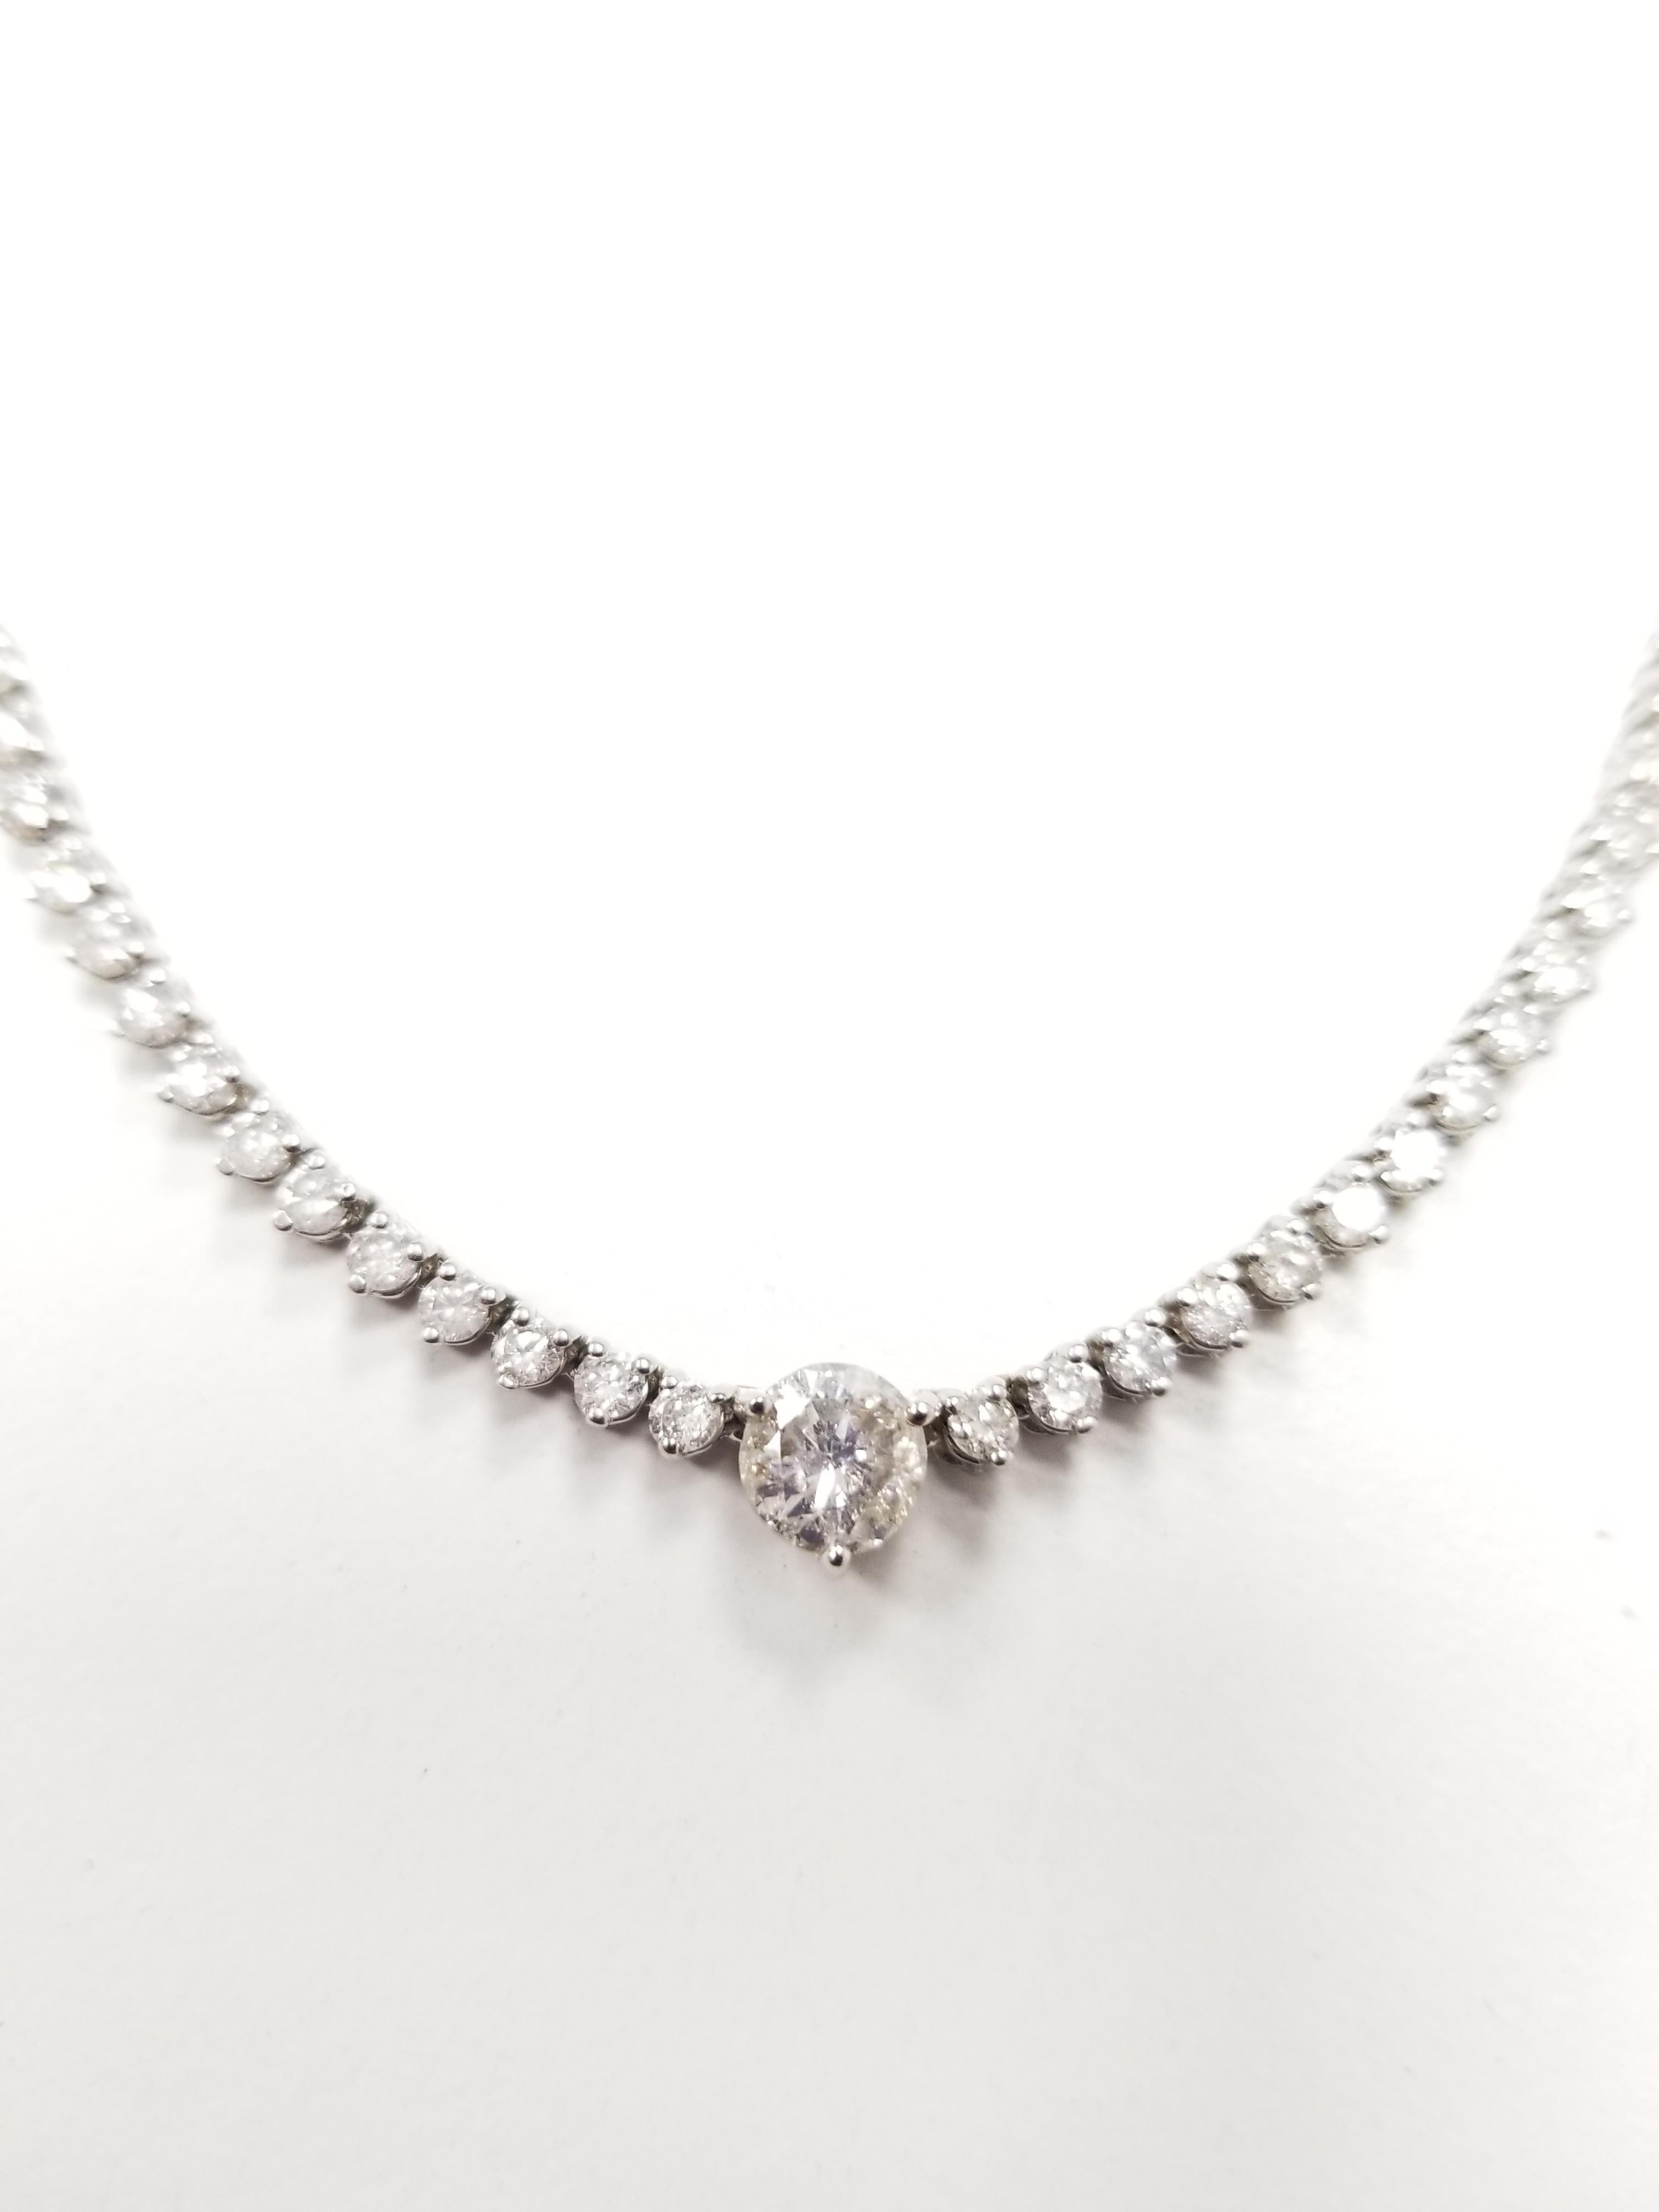 Round Cut GIA Diamond Necklace 14 Karat White Gold